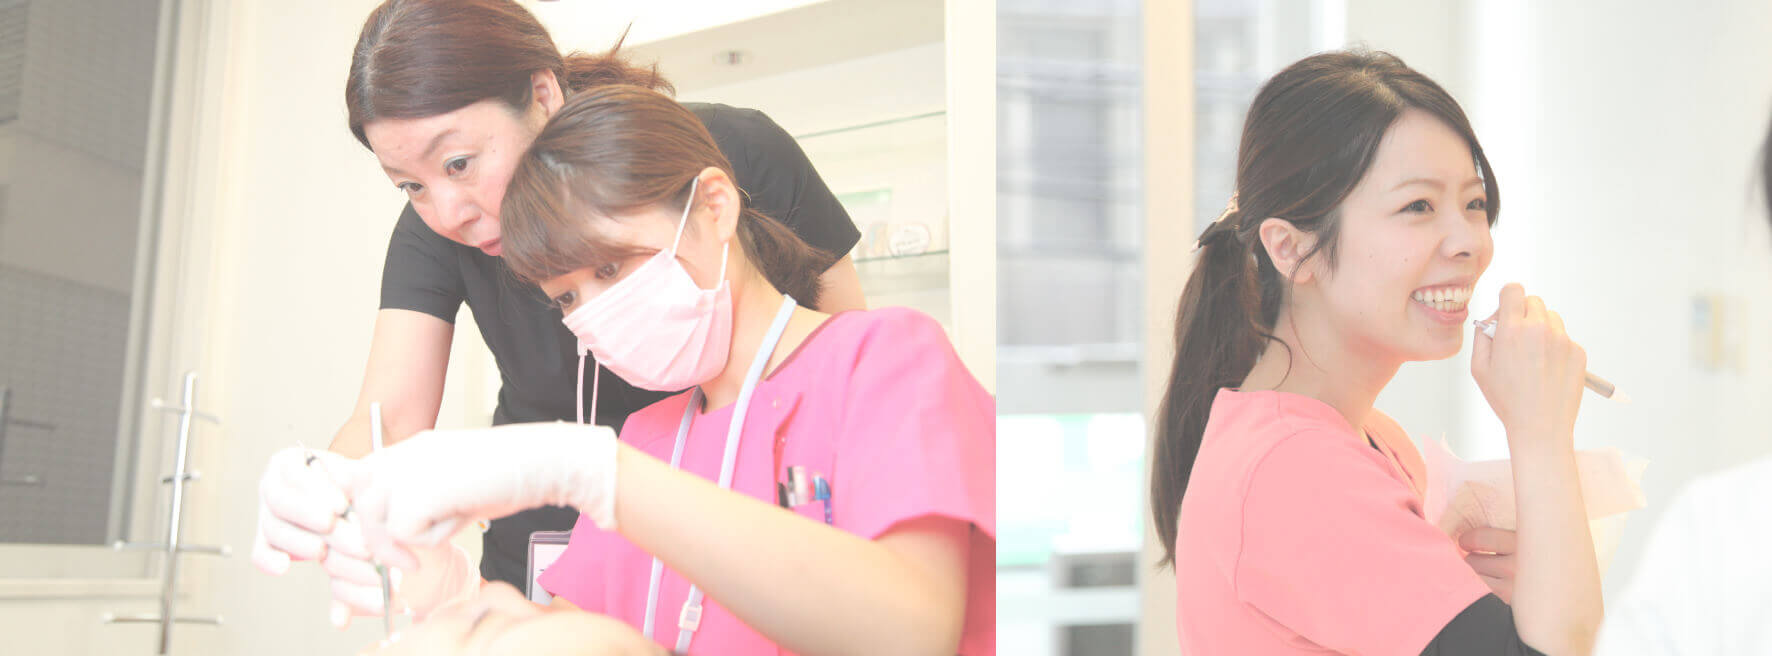 デンタルピュアワーキング | 福岡市博多の歯科衛生士をサポートする会社